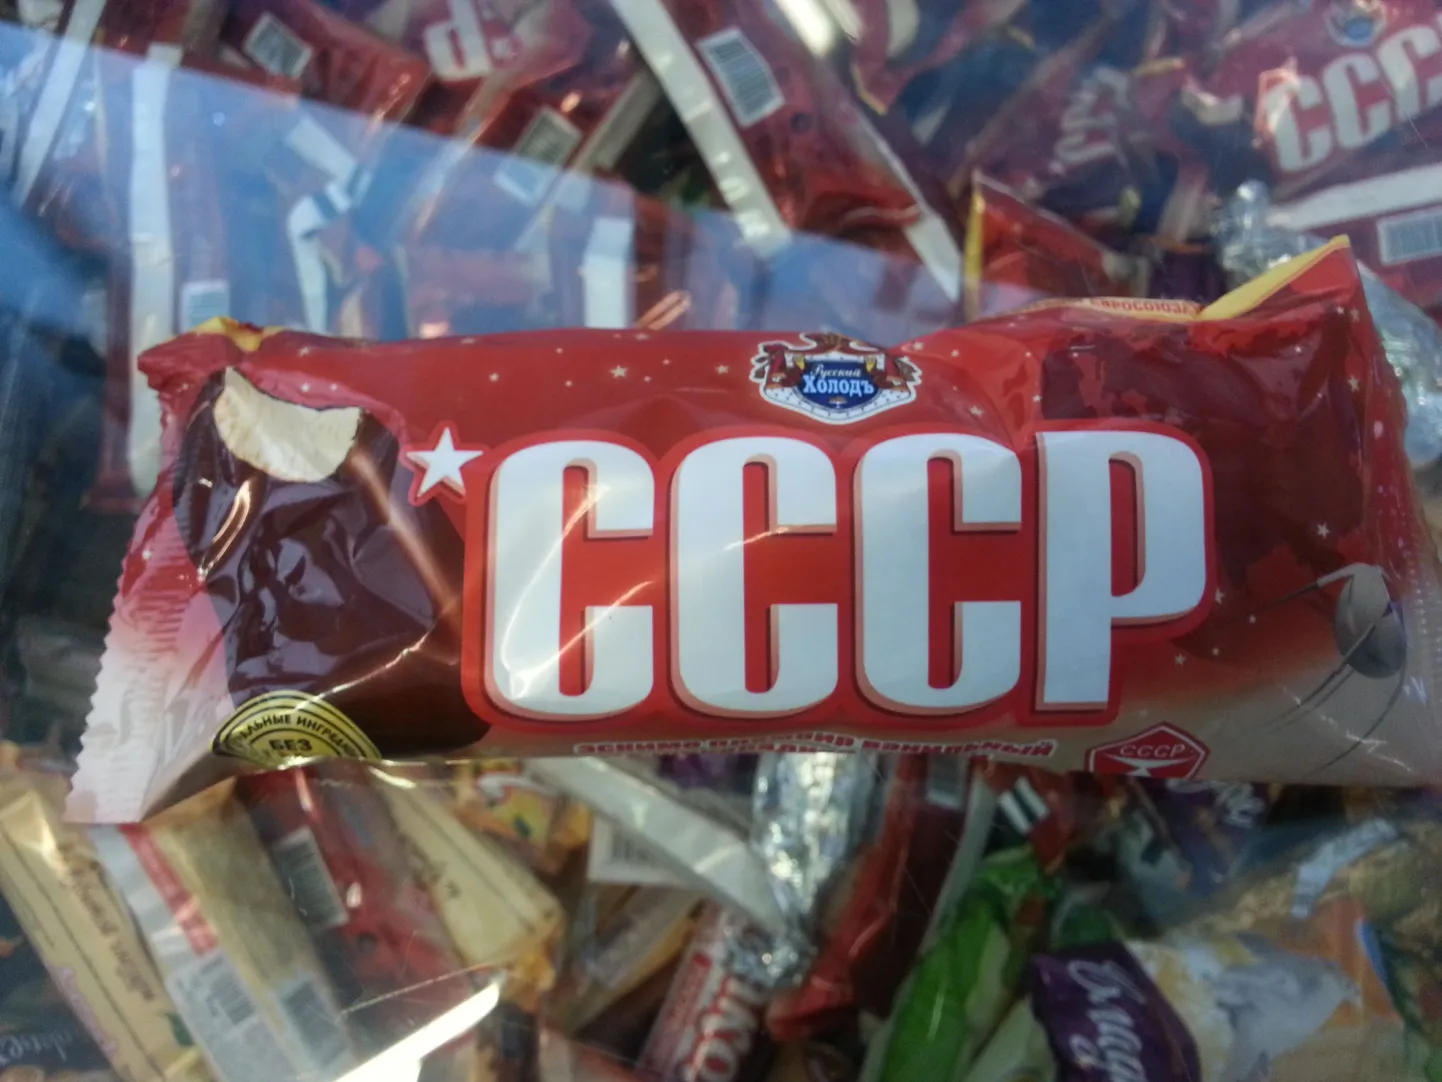 Мороженое с надписью СССР. Снимок иллюстративный.